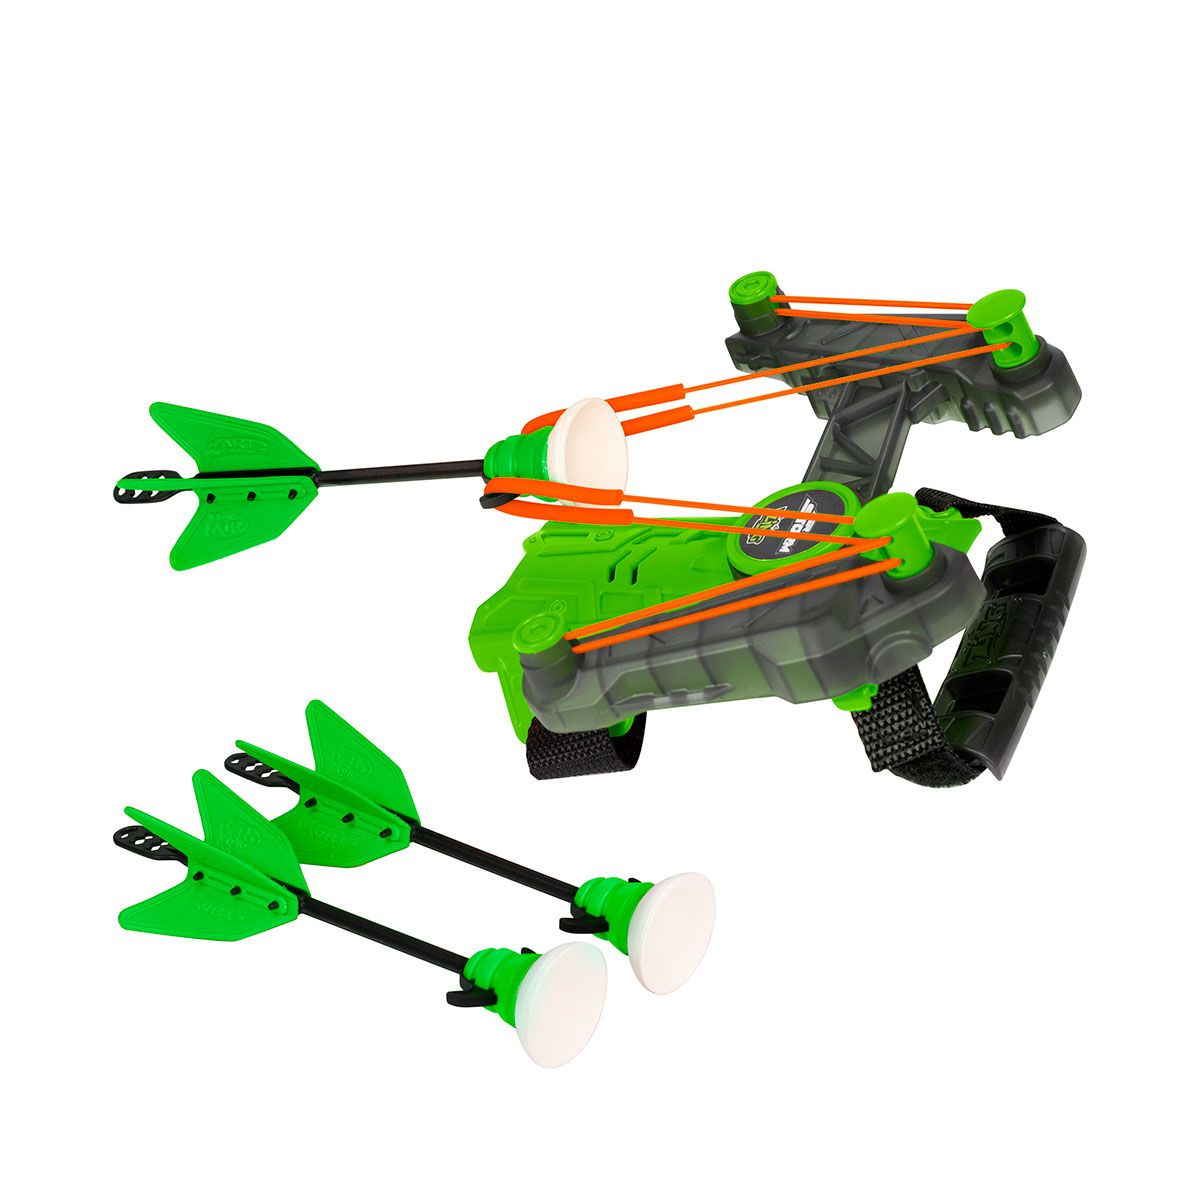 Игрушечный лук на запястье Air Storm - Wrist bow (зеленый)